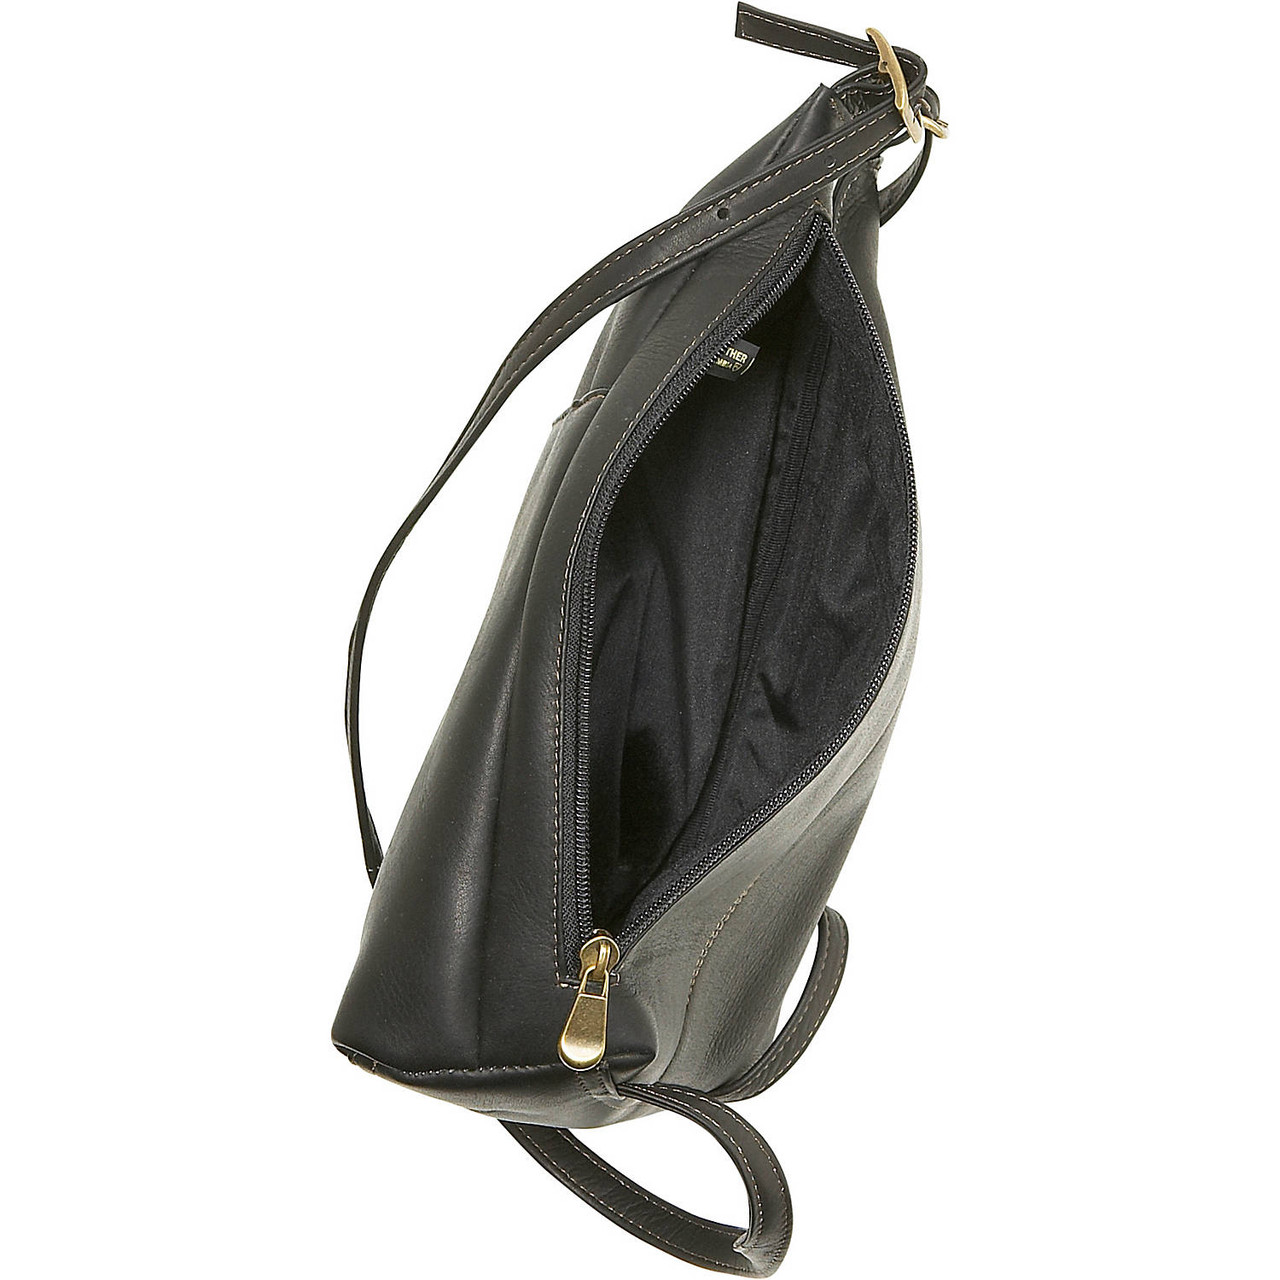 Buy MANDAVA Genuine Leather Women's Mini Side Bag Satchel Sling